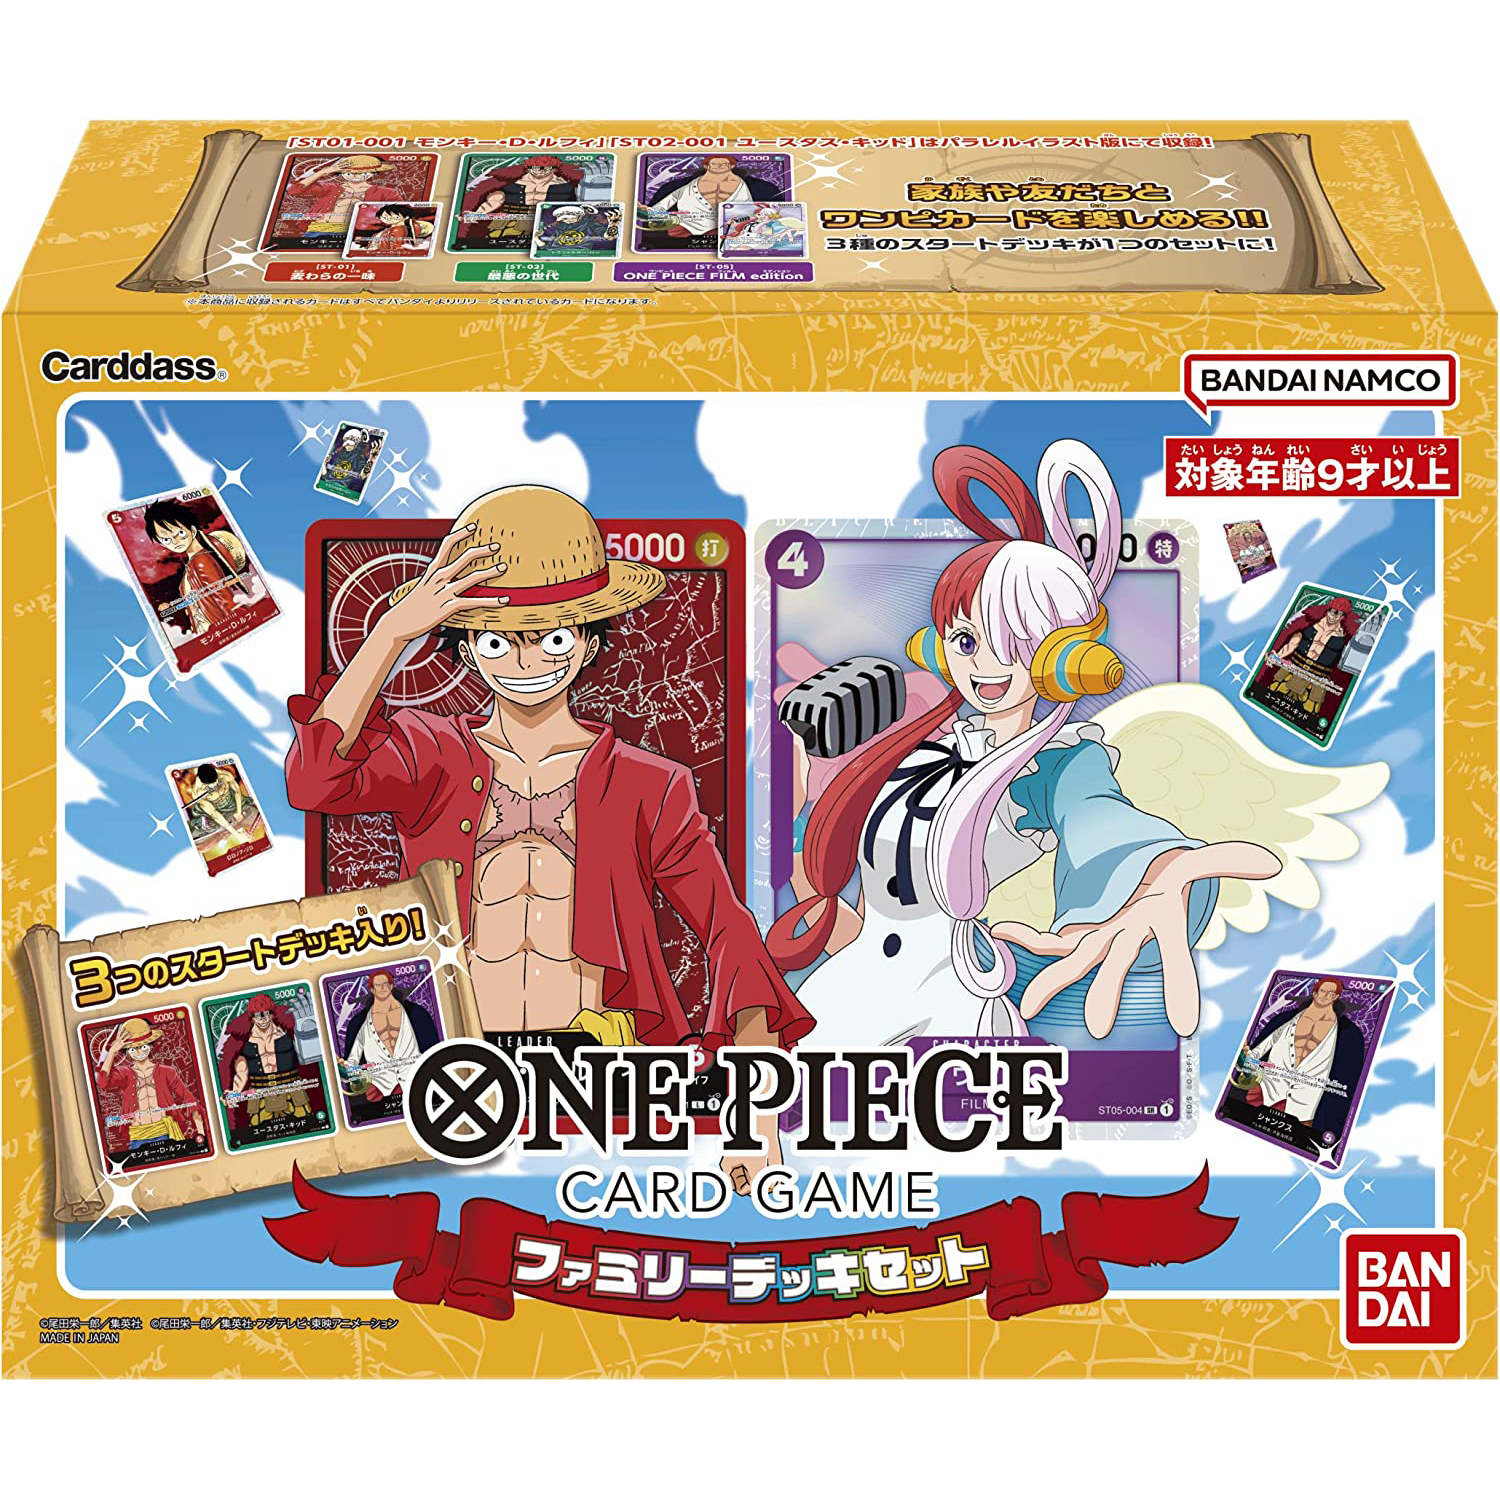 Jogo de cartas One Piece Starter Deck conjunto completo de 7